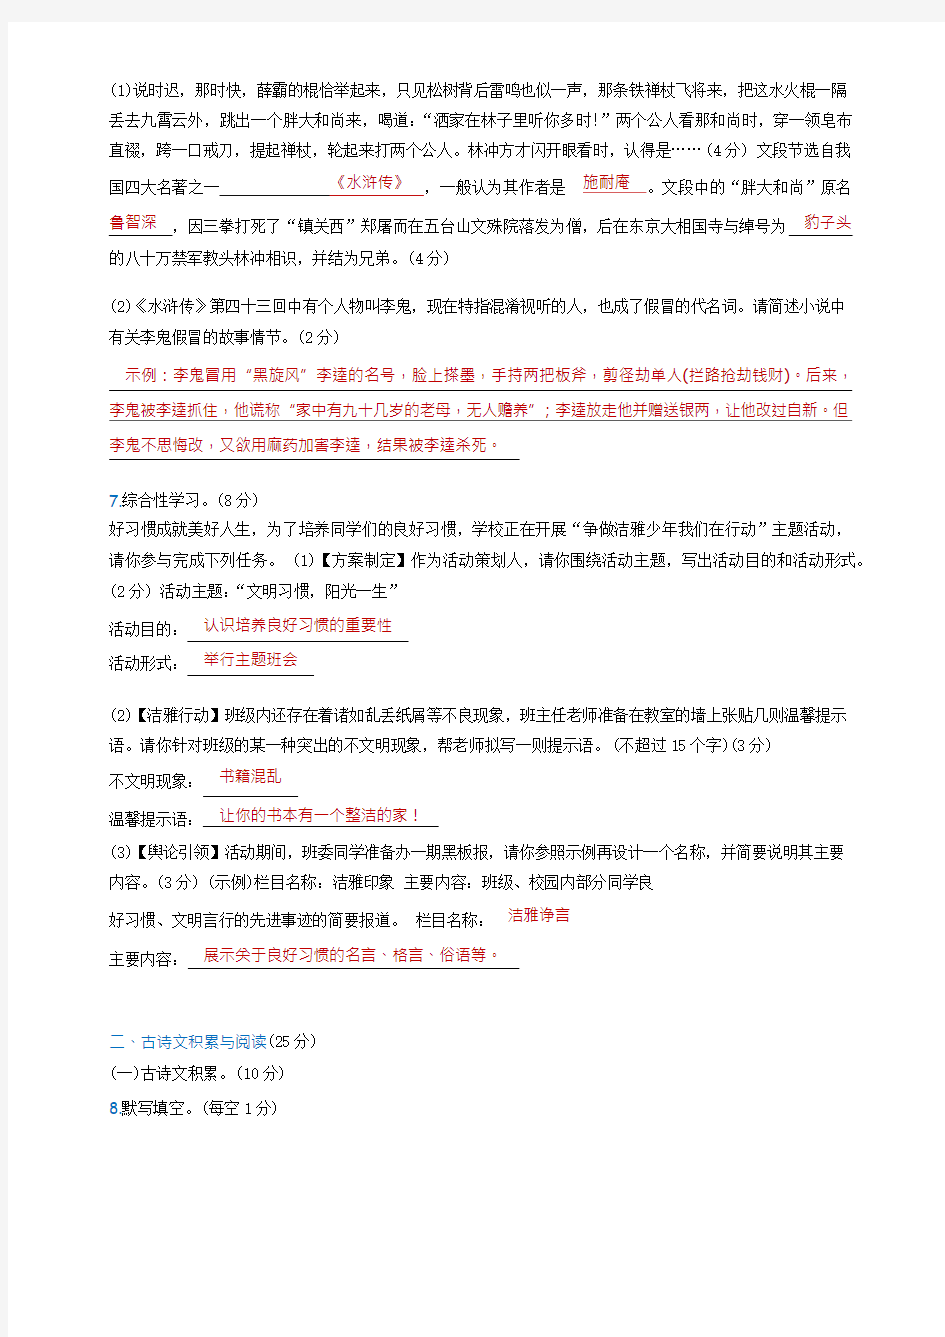 2019年秋重庆市巴蜀中学校九年级语文上册第二单元测试卷